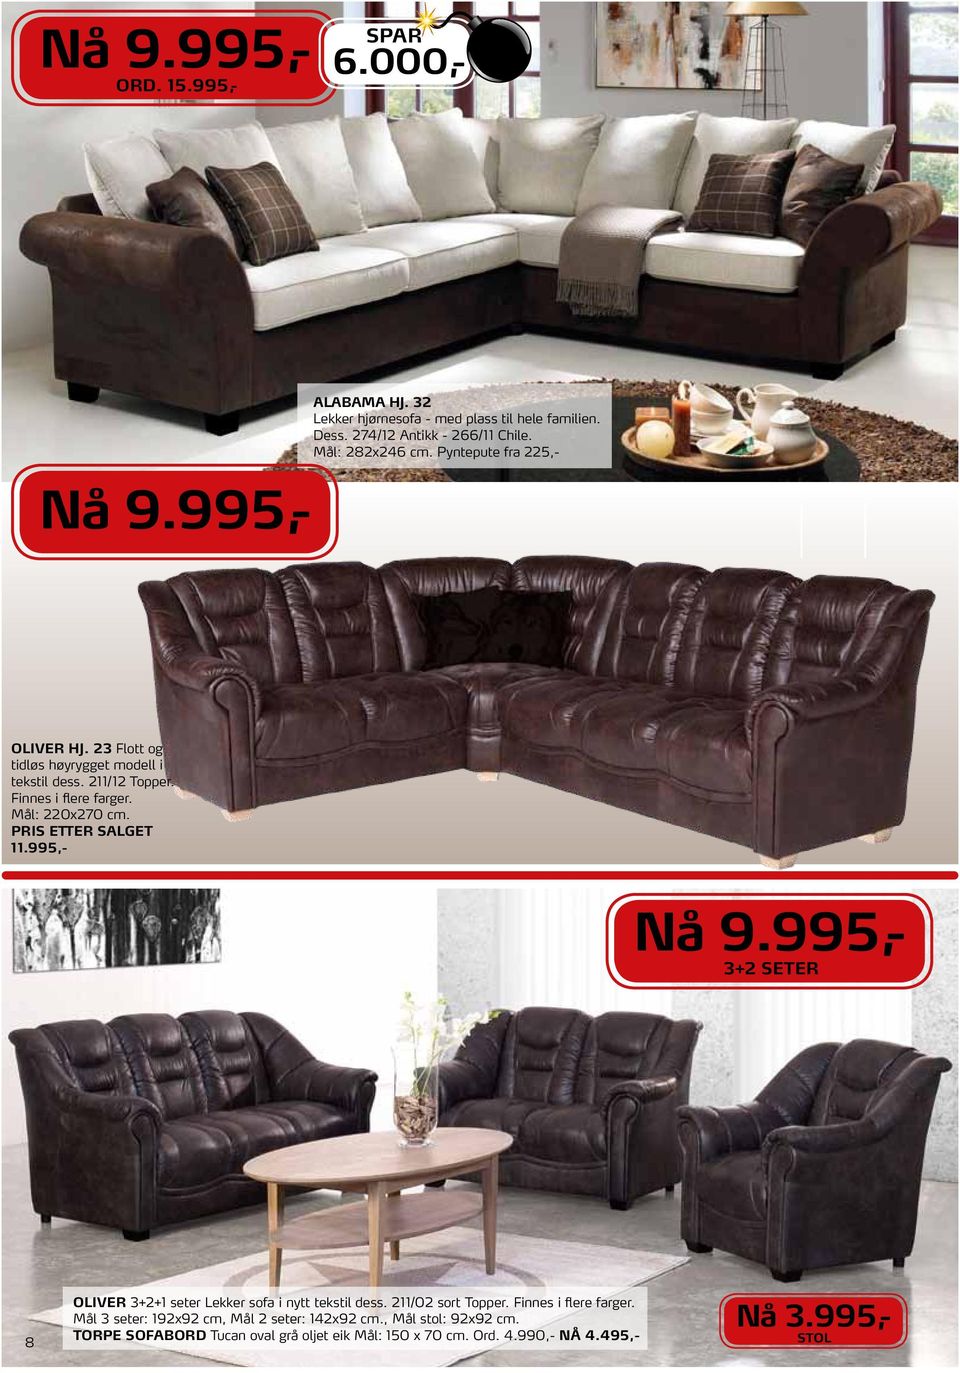 pris etter salget 11.995,- 3+2 seter 8 OLIVER 3+2+1 seter Lekker sofa i nytt tekstil dess. 211/02 sort Topper. Finnes i flere farger.